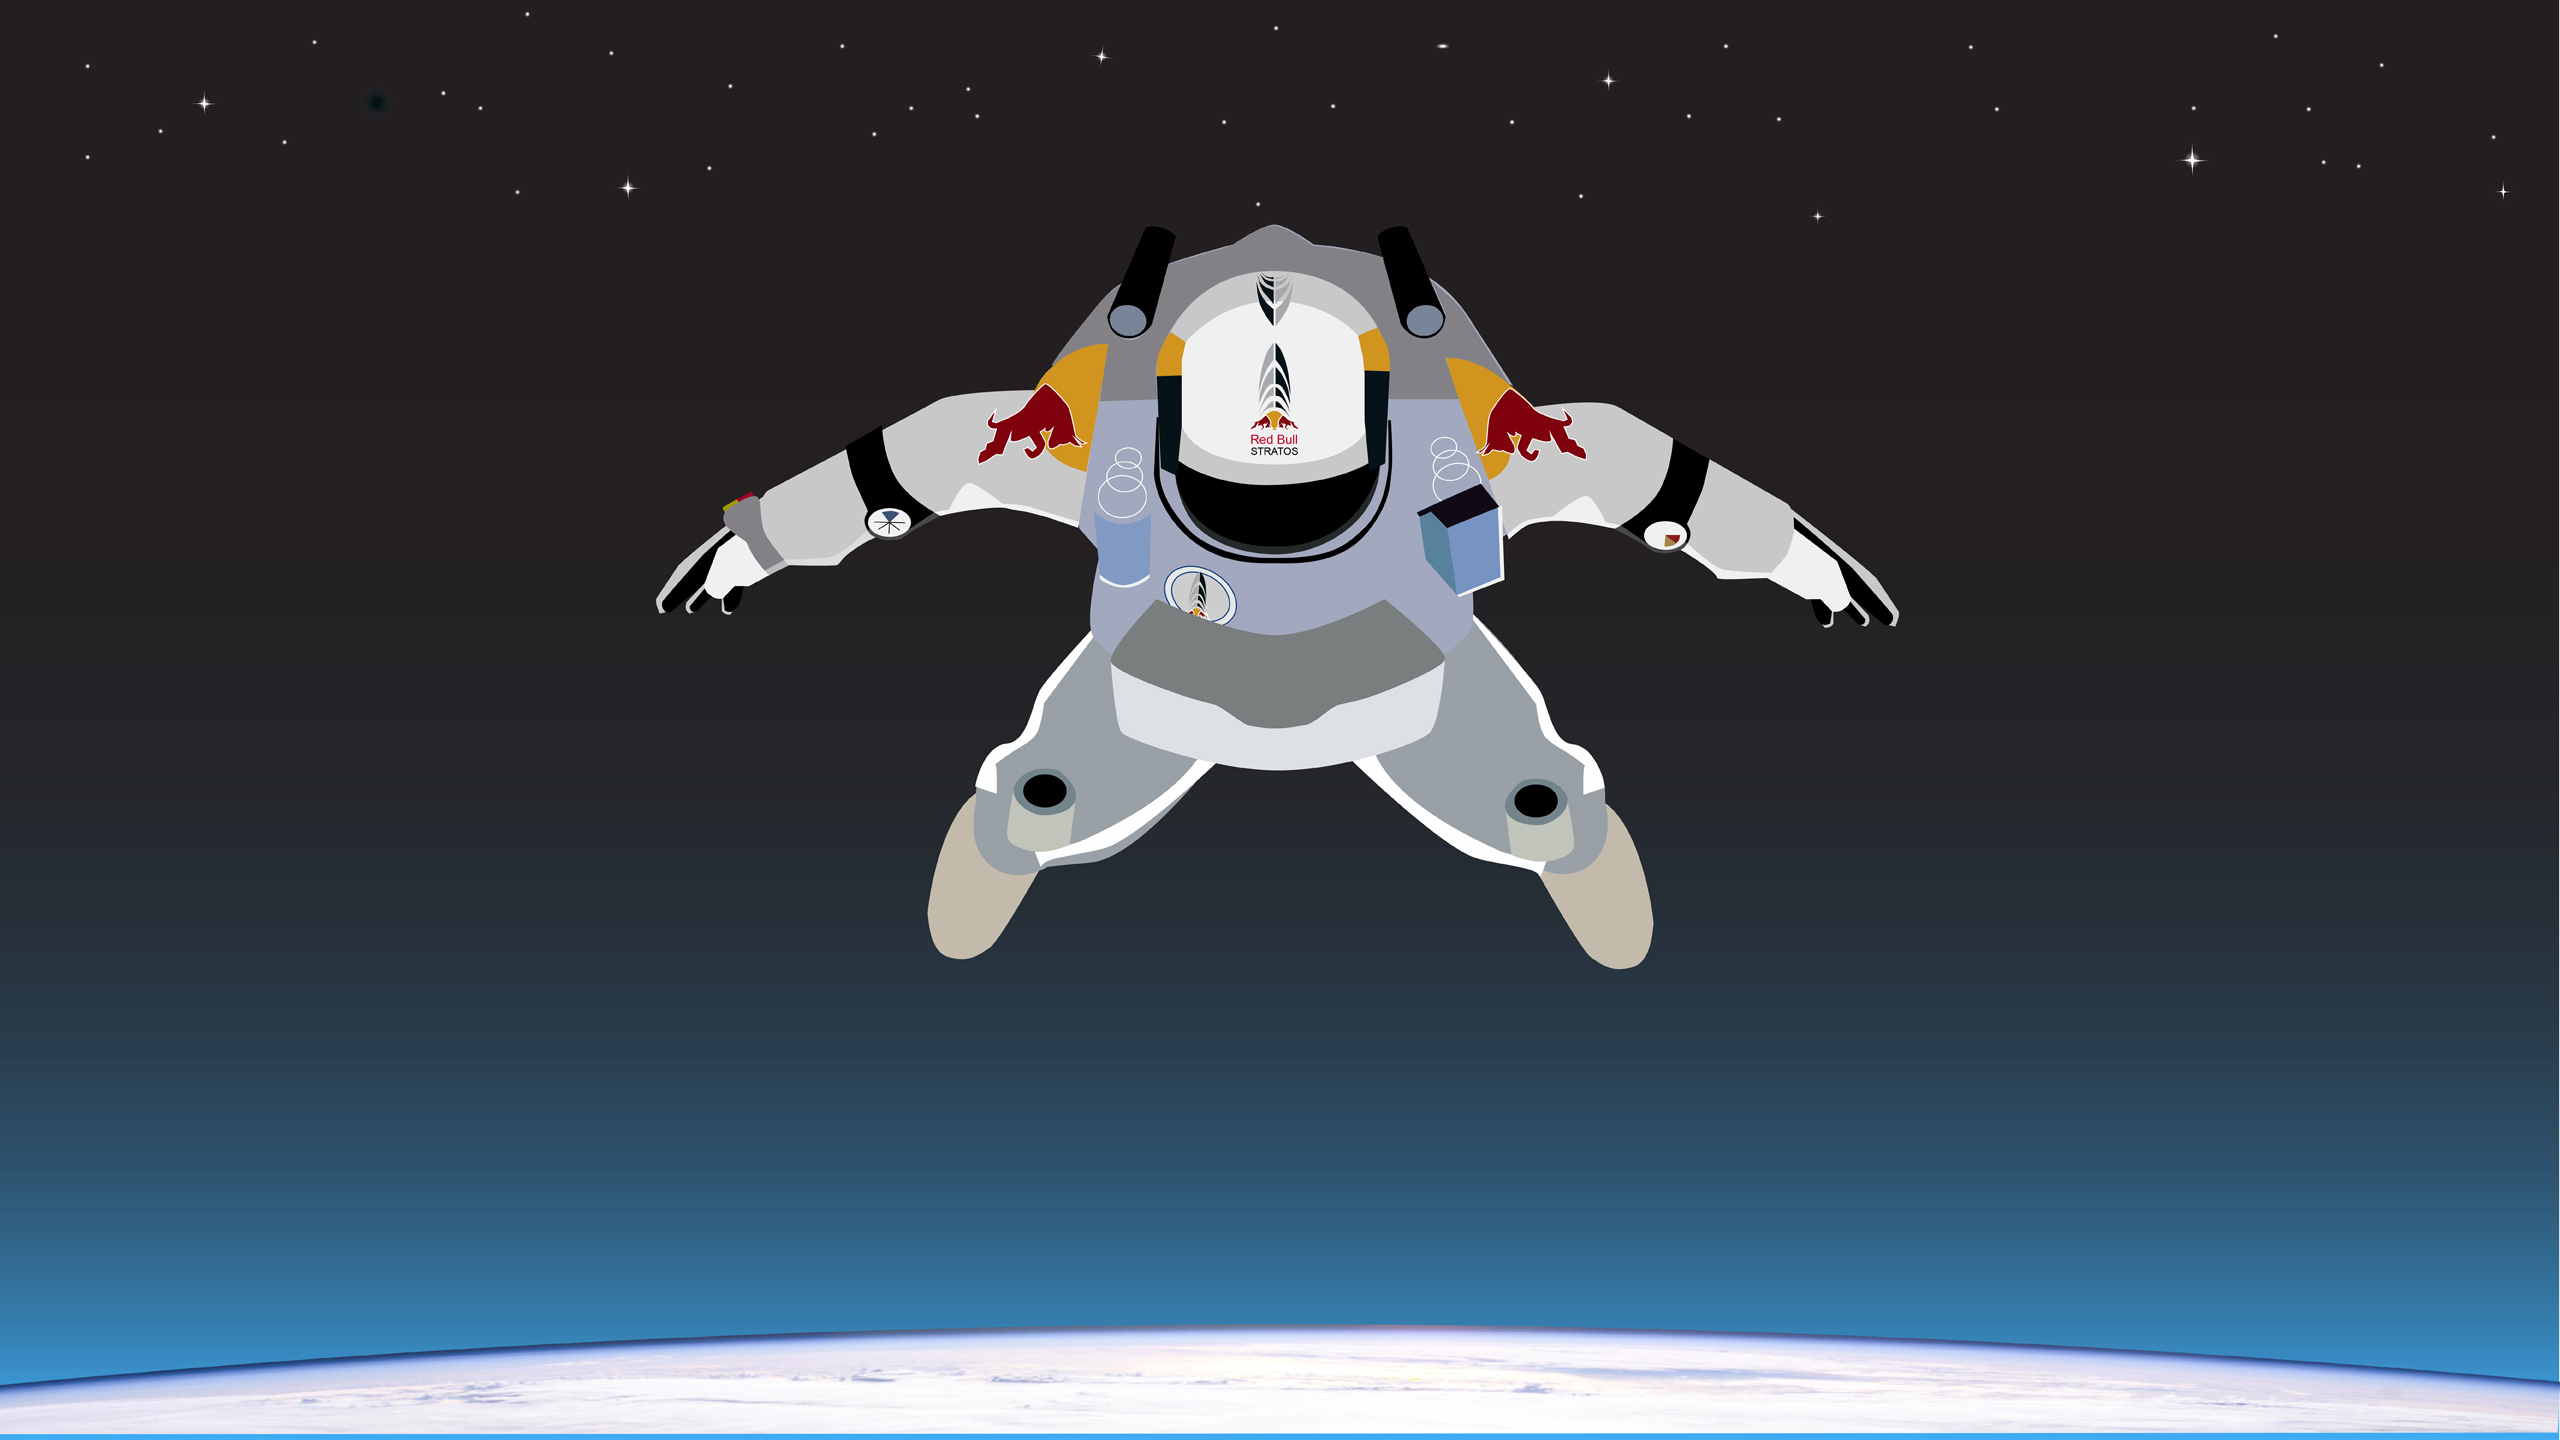 komme ud for ål Amerika Skydive From Space - Desktop Wallpaper - RobotSpaceBrain